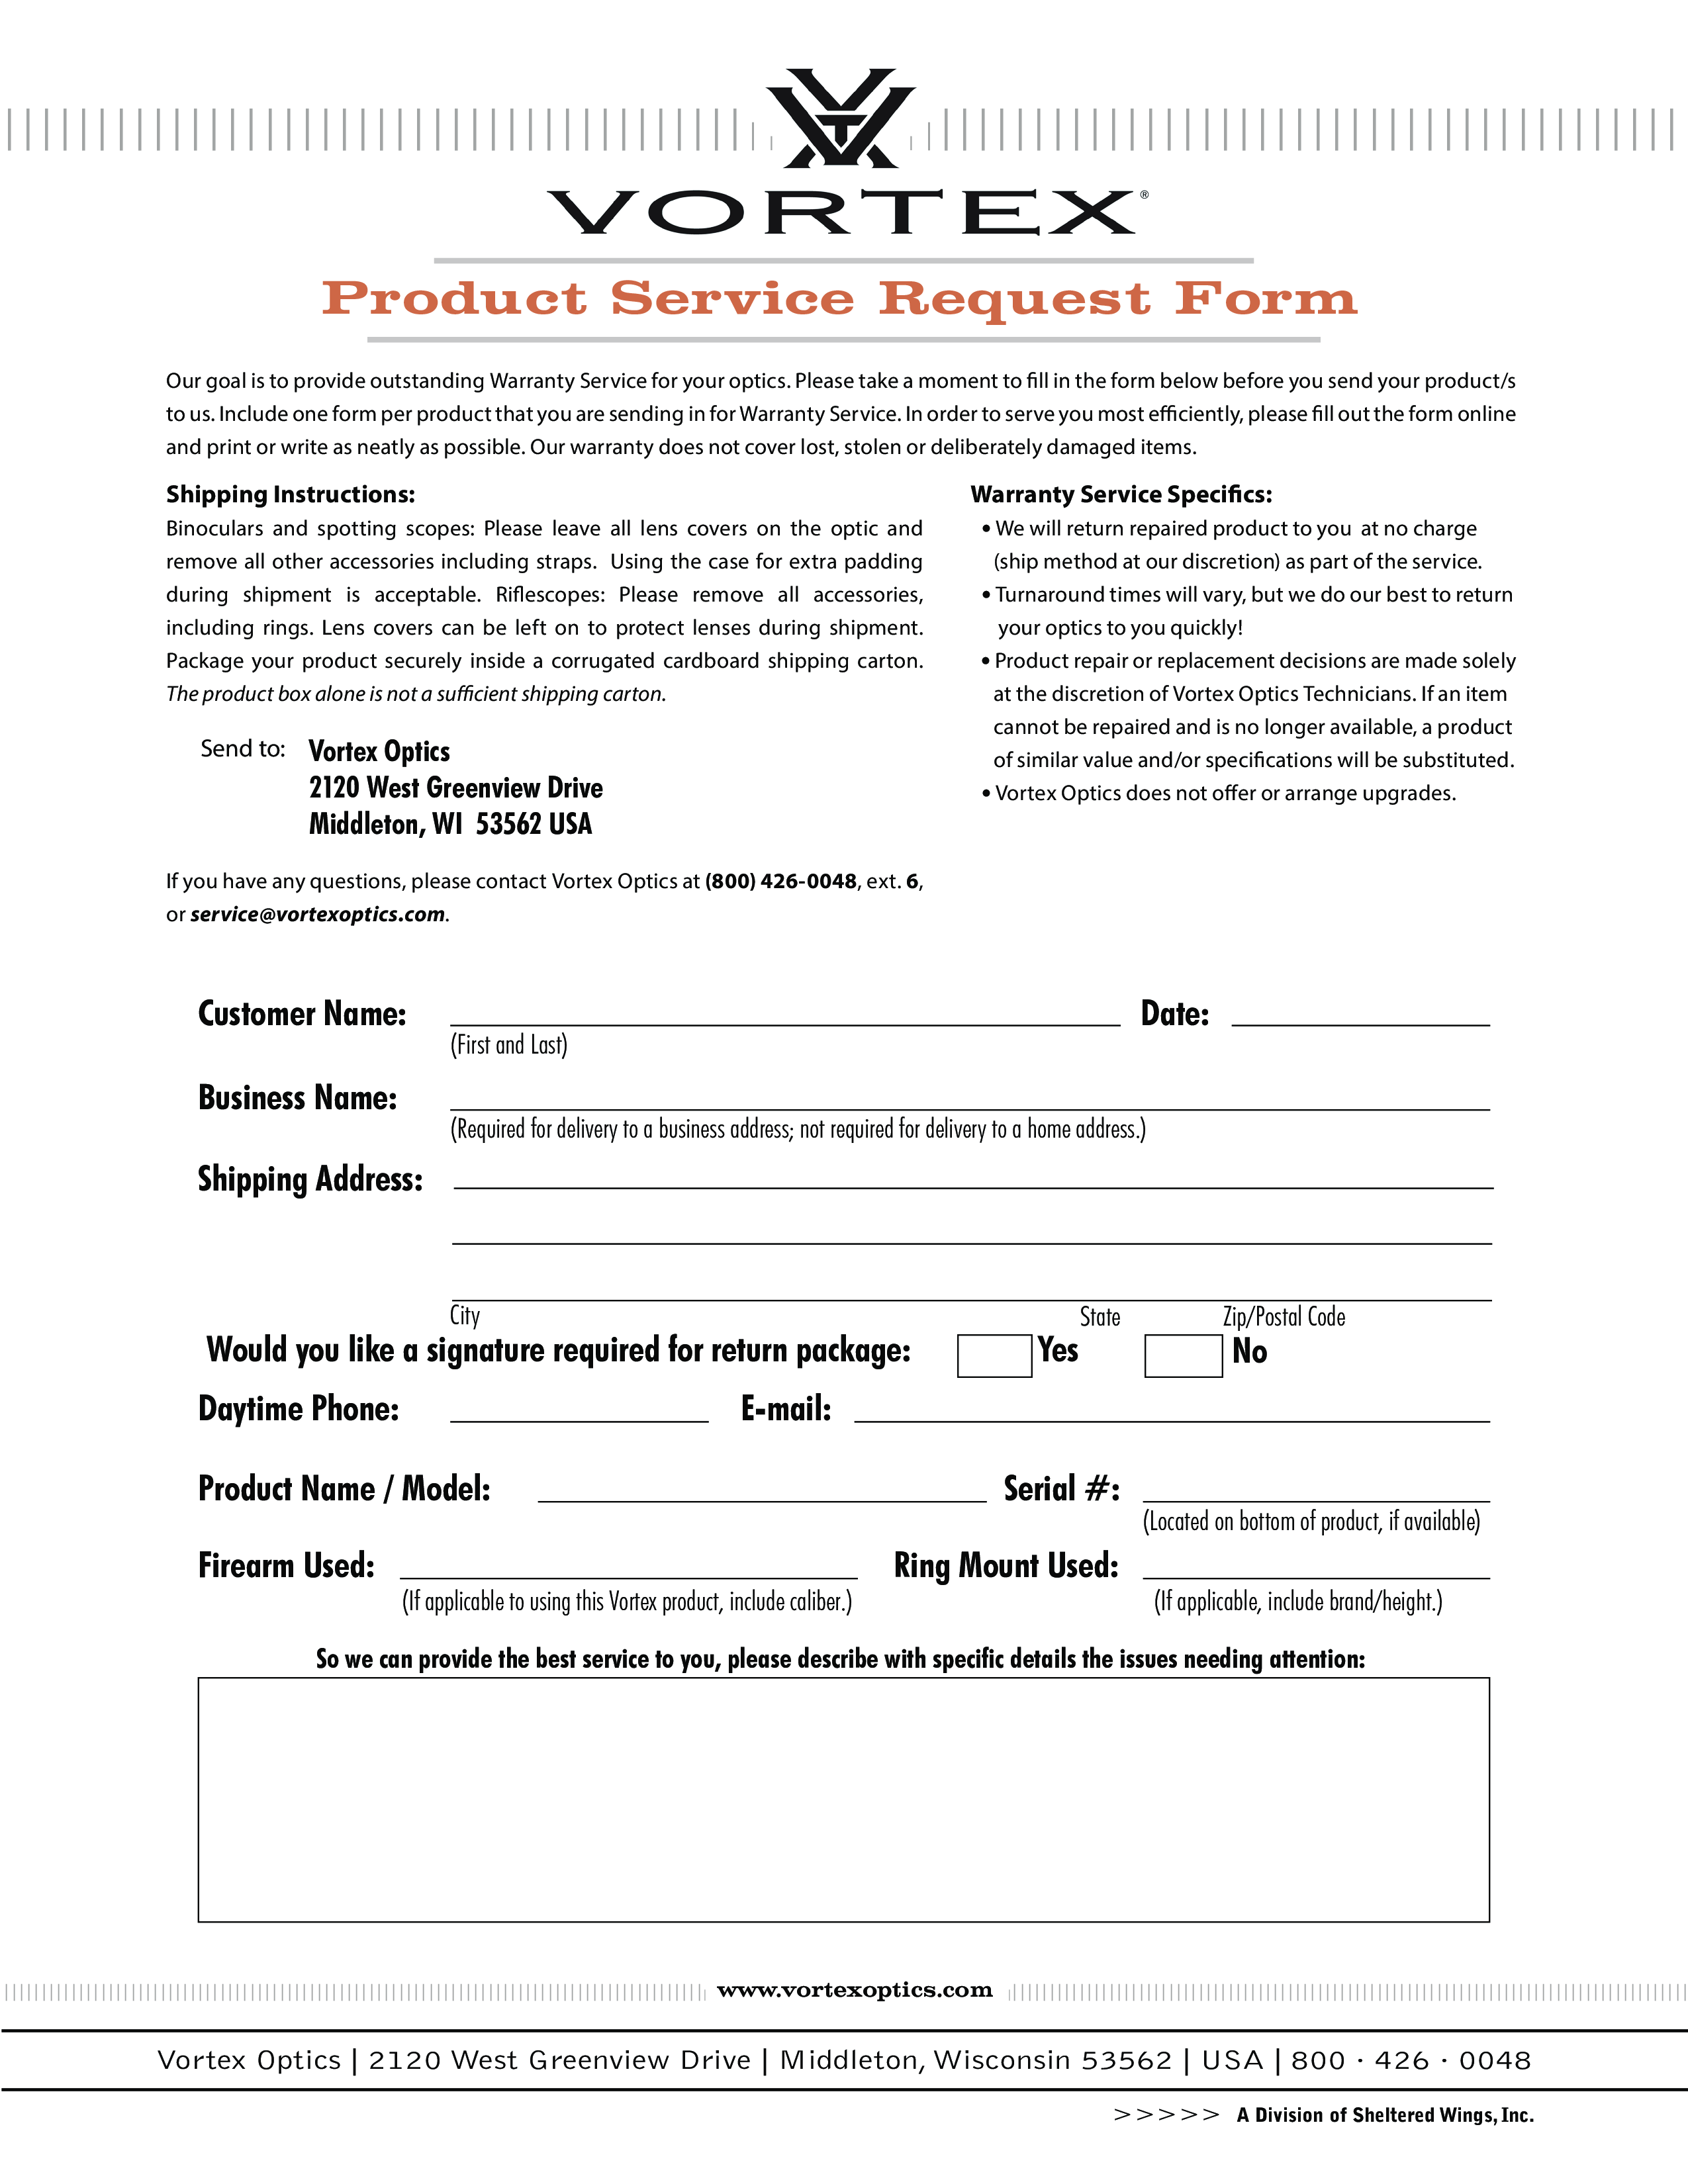 Sample Product Repair Order Form 1 main image